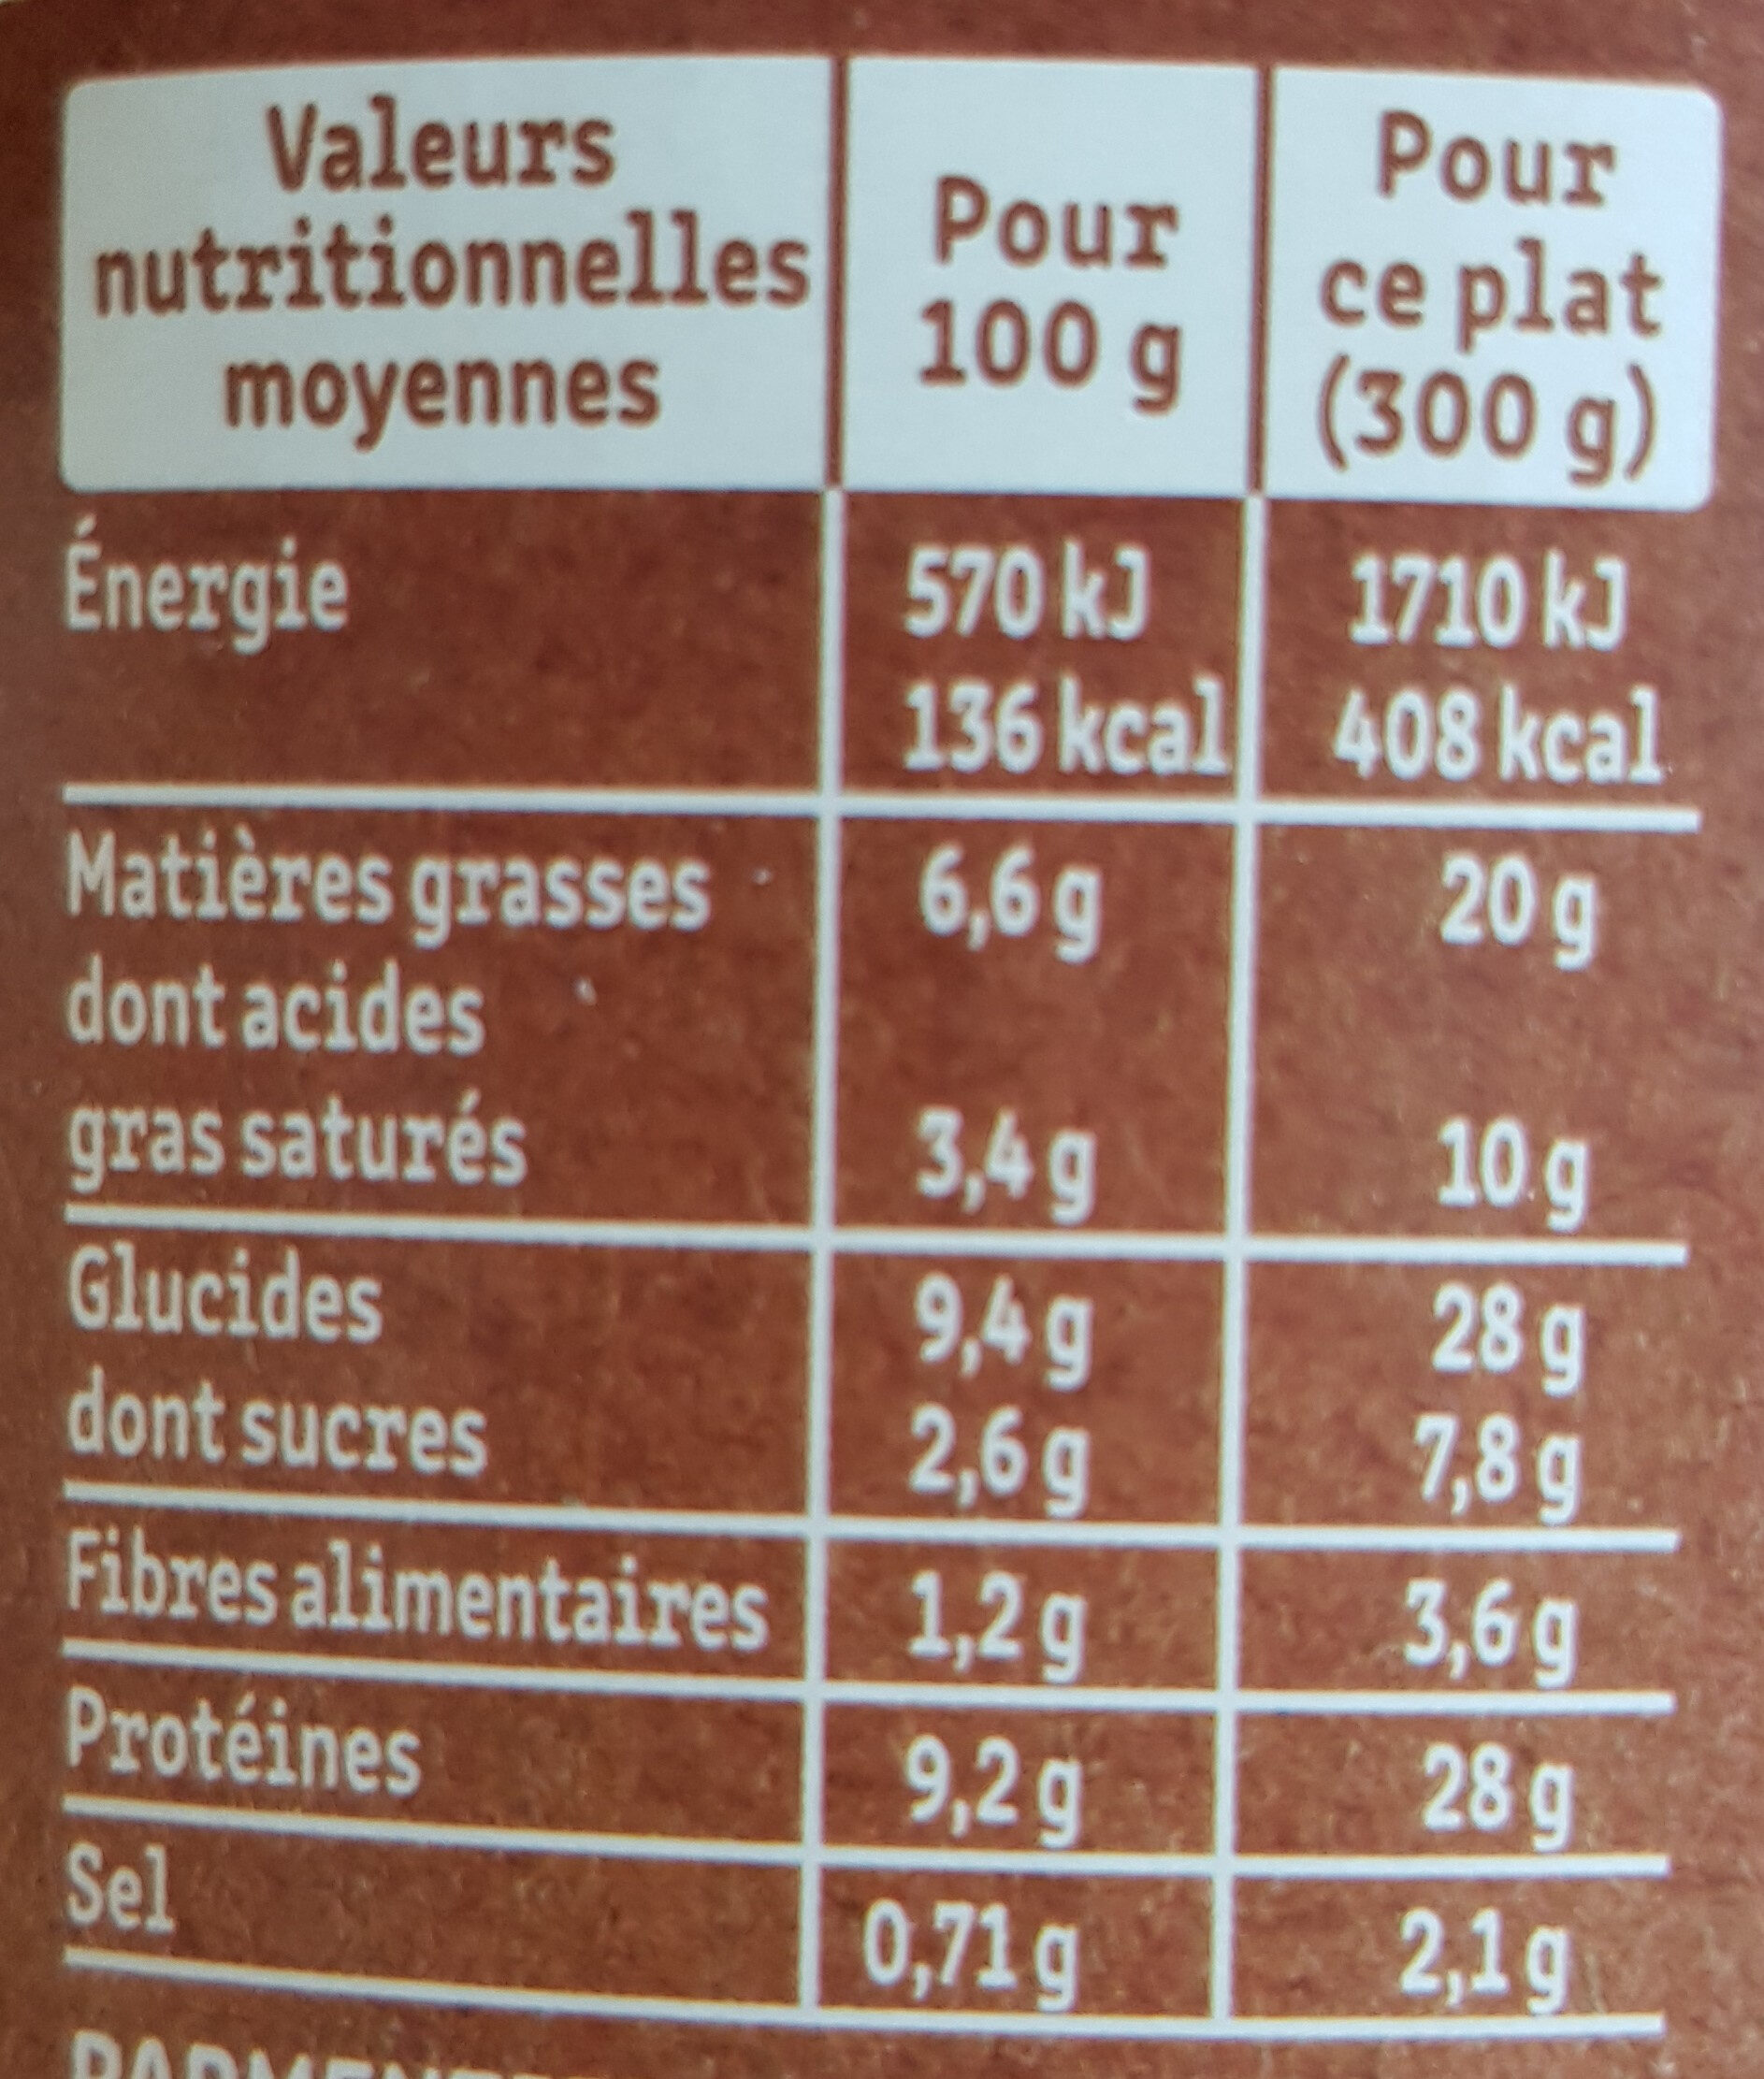 Le Parmentier de Boeuf Charolais purée à la crème fraîche - Nutrition facts - fr